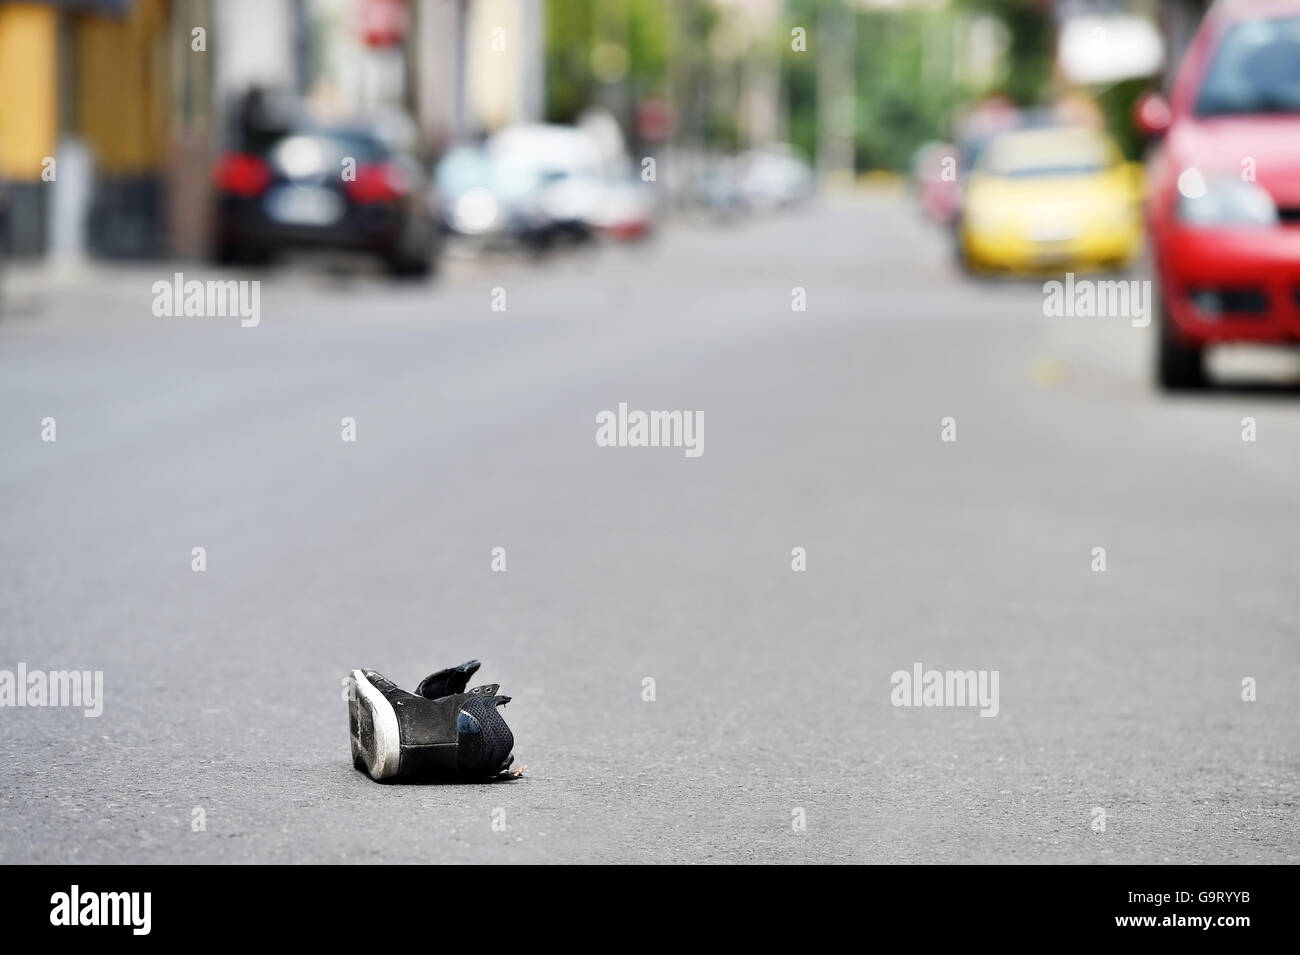 Zapata en la calle con los coches en un segundo plano después de la víctima fue golpeada por el vehículo Foto de stock